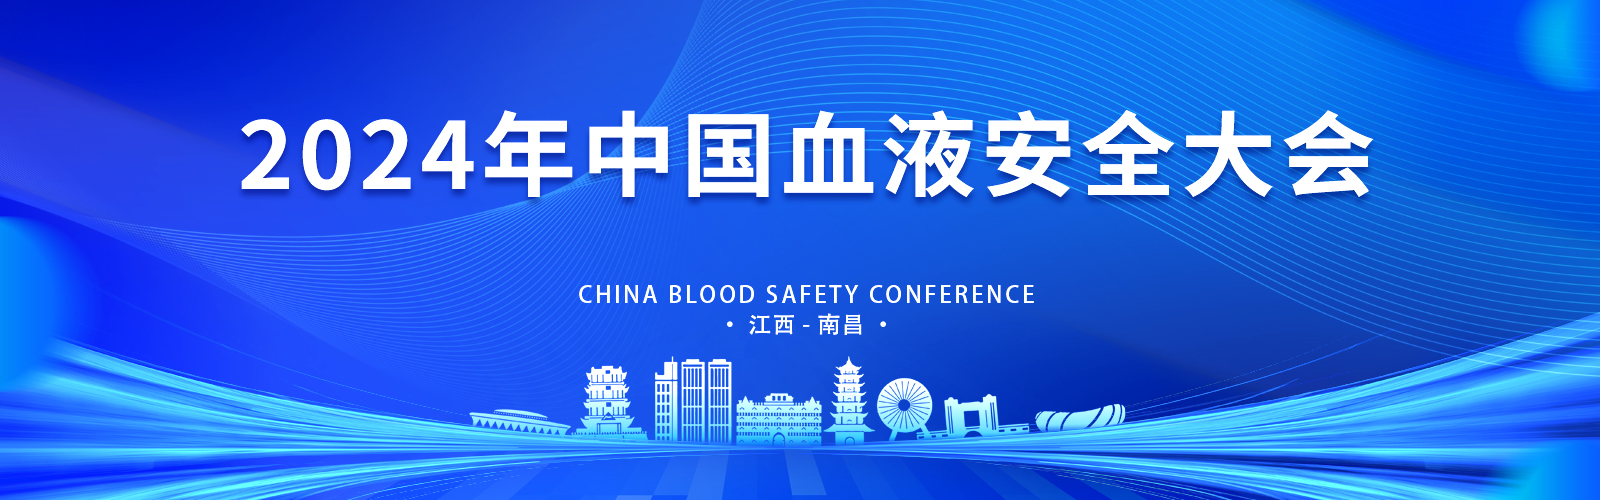 2024年中国血液安全大会